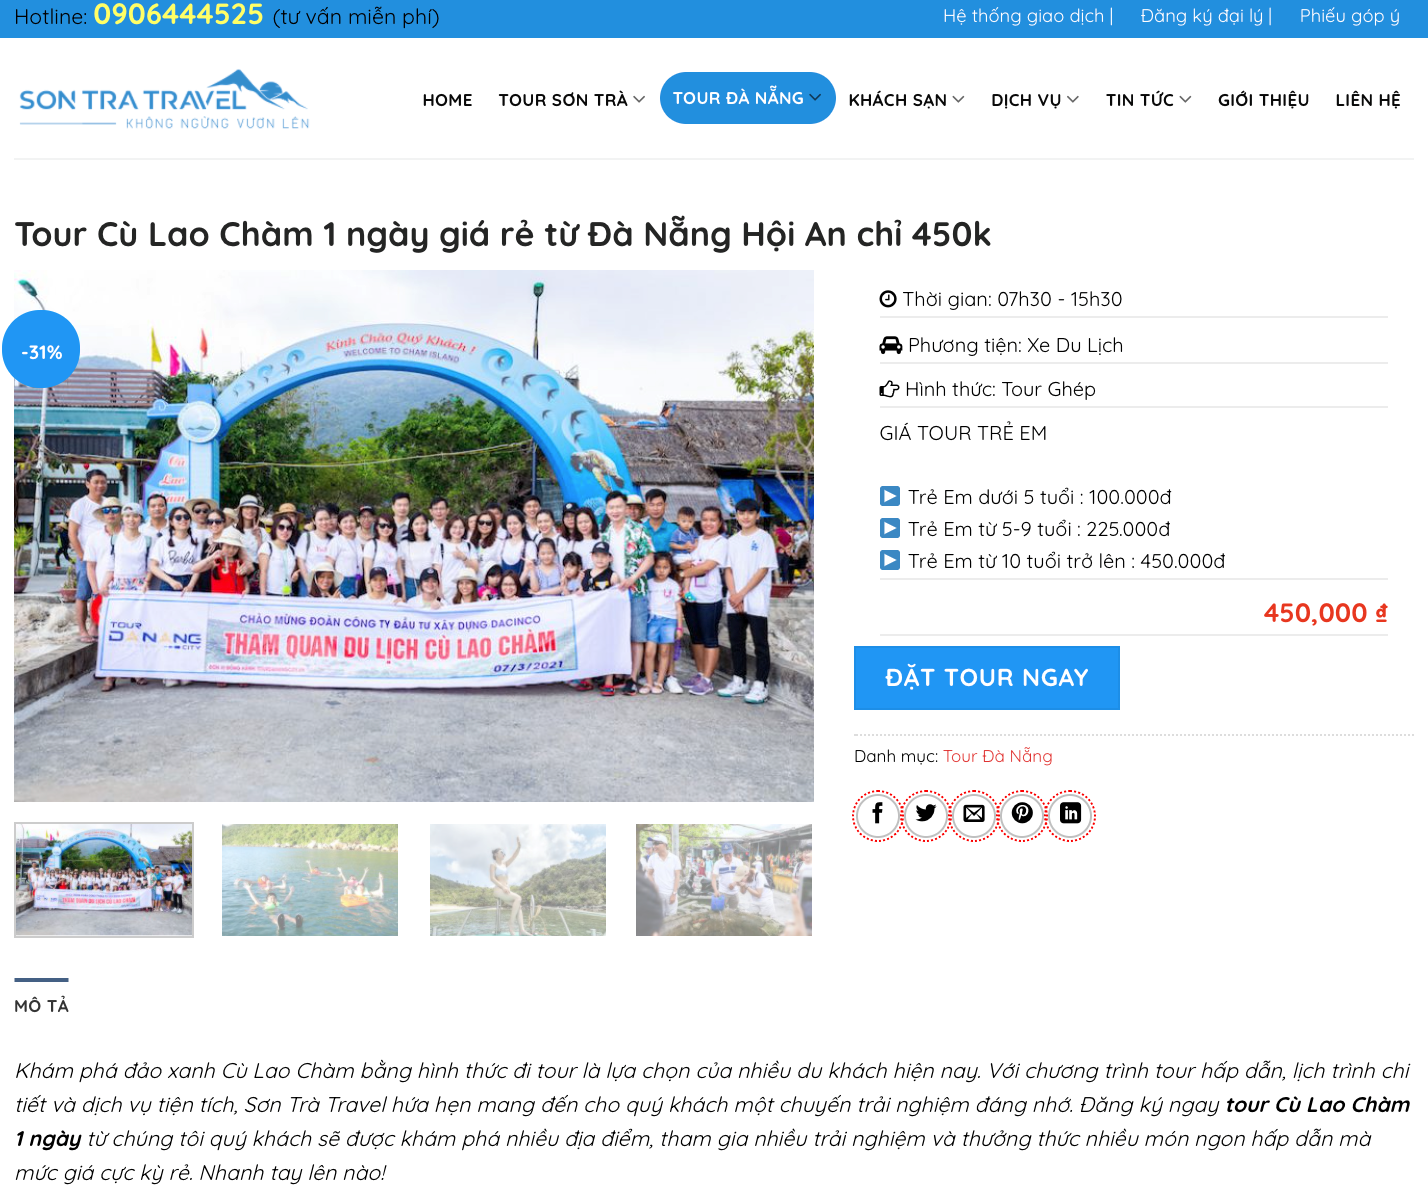 Lịch trình tour Cù Lao Chàm được tổ chức hàng ngày tại Sơn Trà Travel